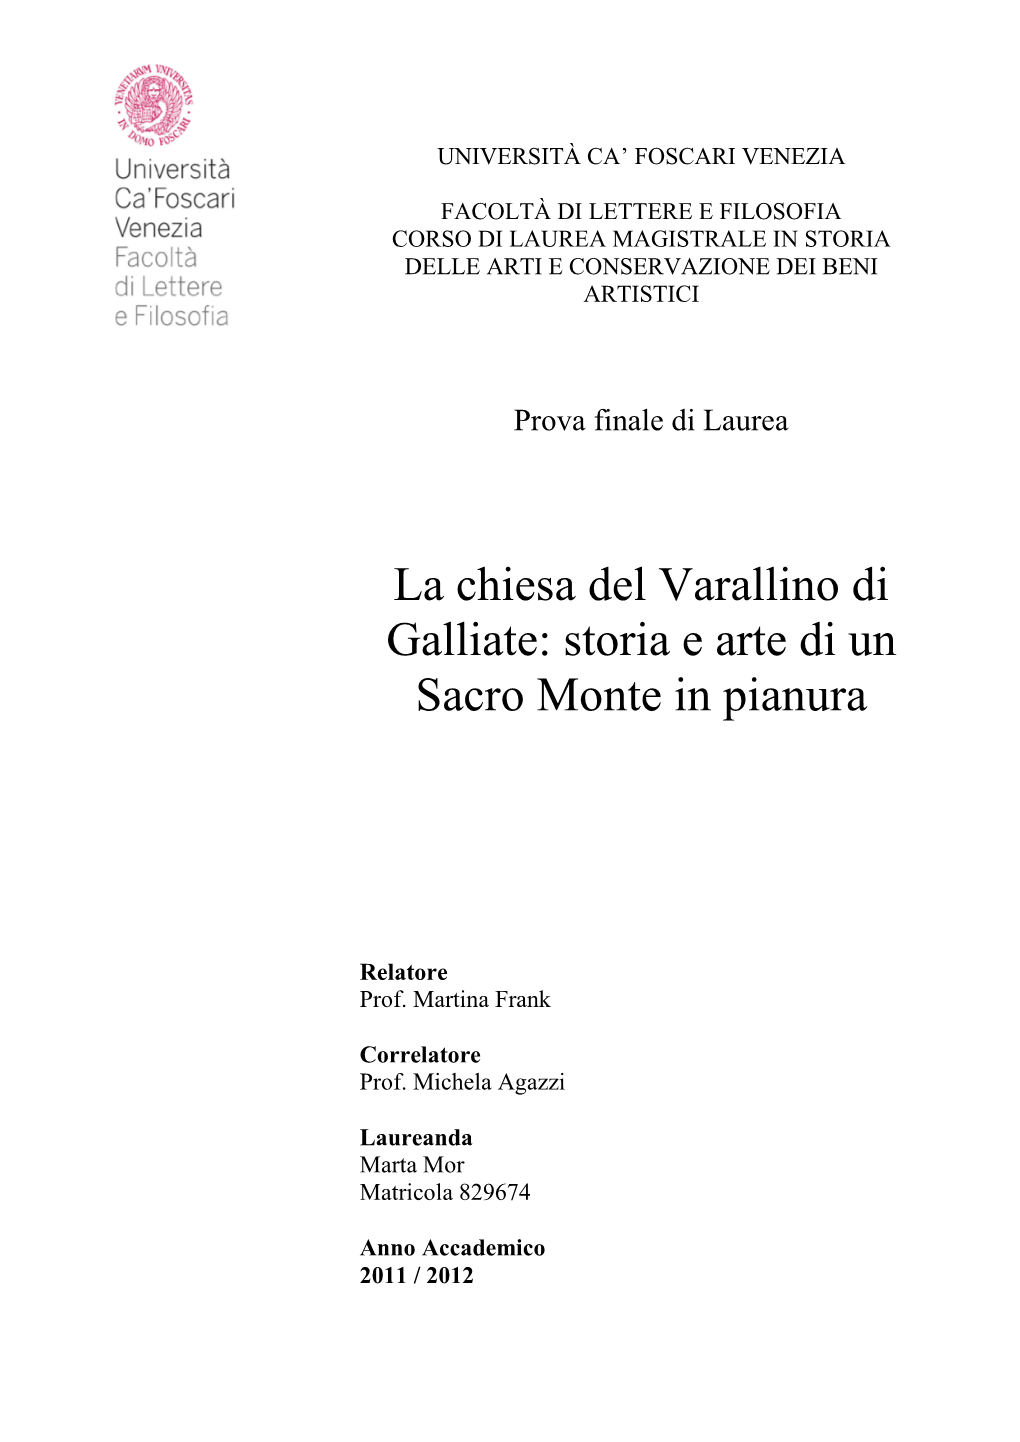 La Chiesa Del Varallino Di Galliate: Storia E Arte Di Un Sacro Monte in Pianura